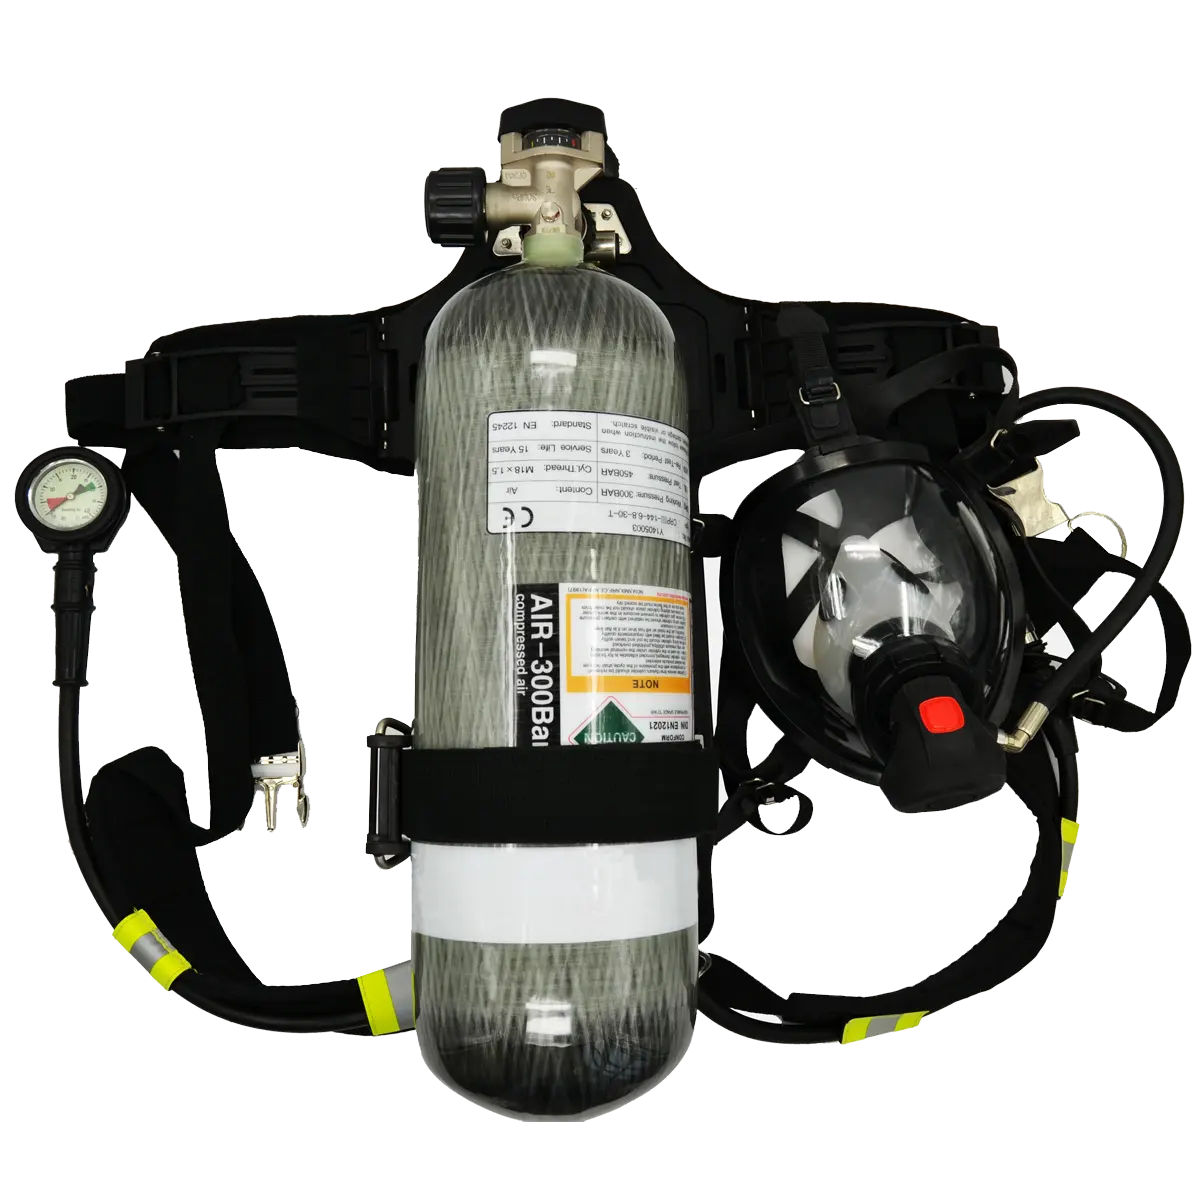 Elfo-aparato de respiración contenido, accesorio para bombero